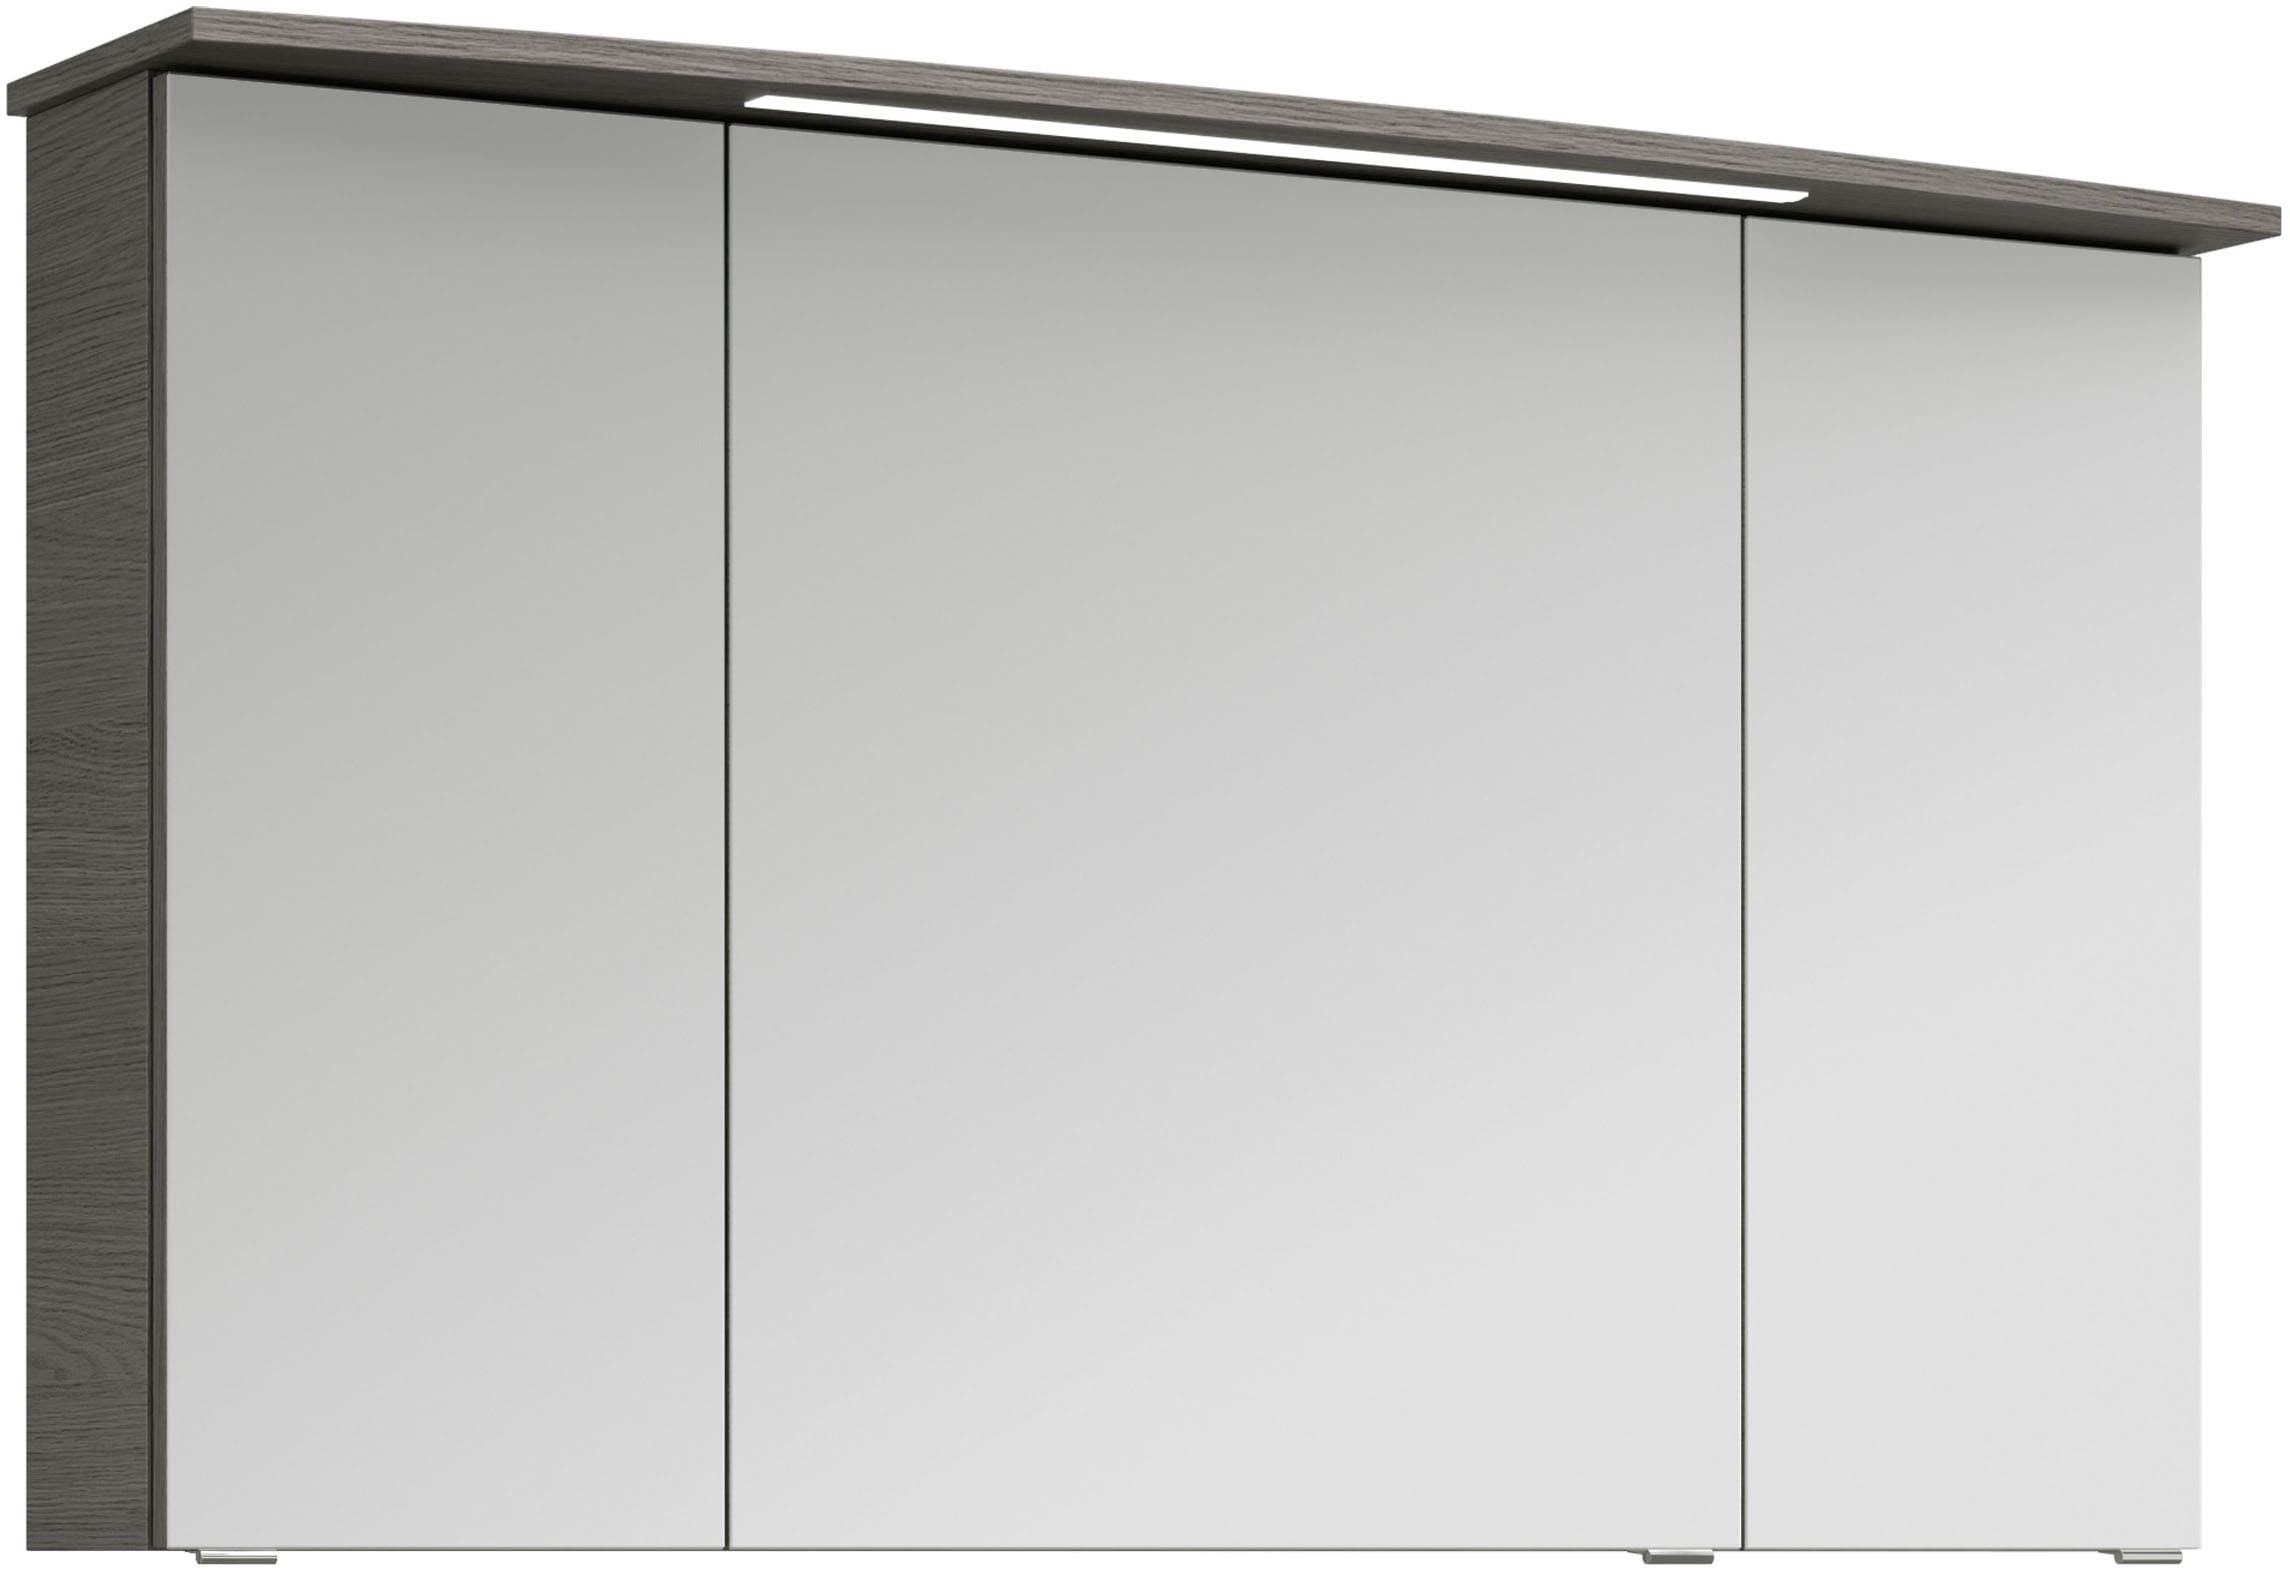 Saphir Badezimmerspiegelschrank "Serie 4010 Badezimmer-Spiegelschrank inkl. LED-Beleuchtung im Kranz", Badschrank 122 cm